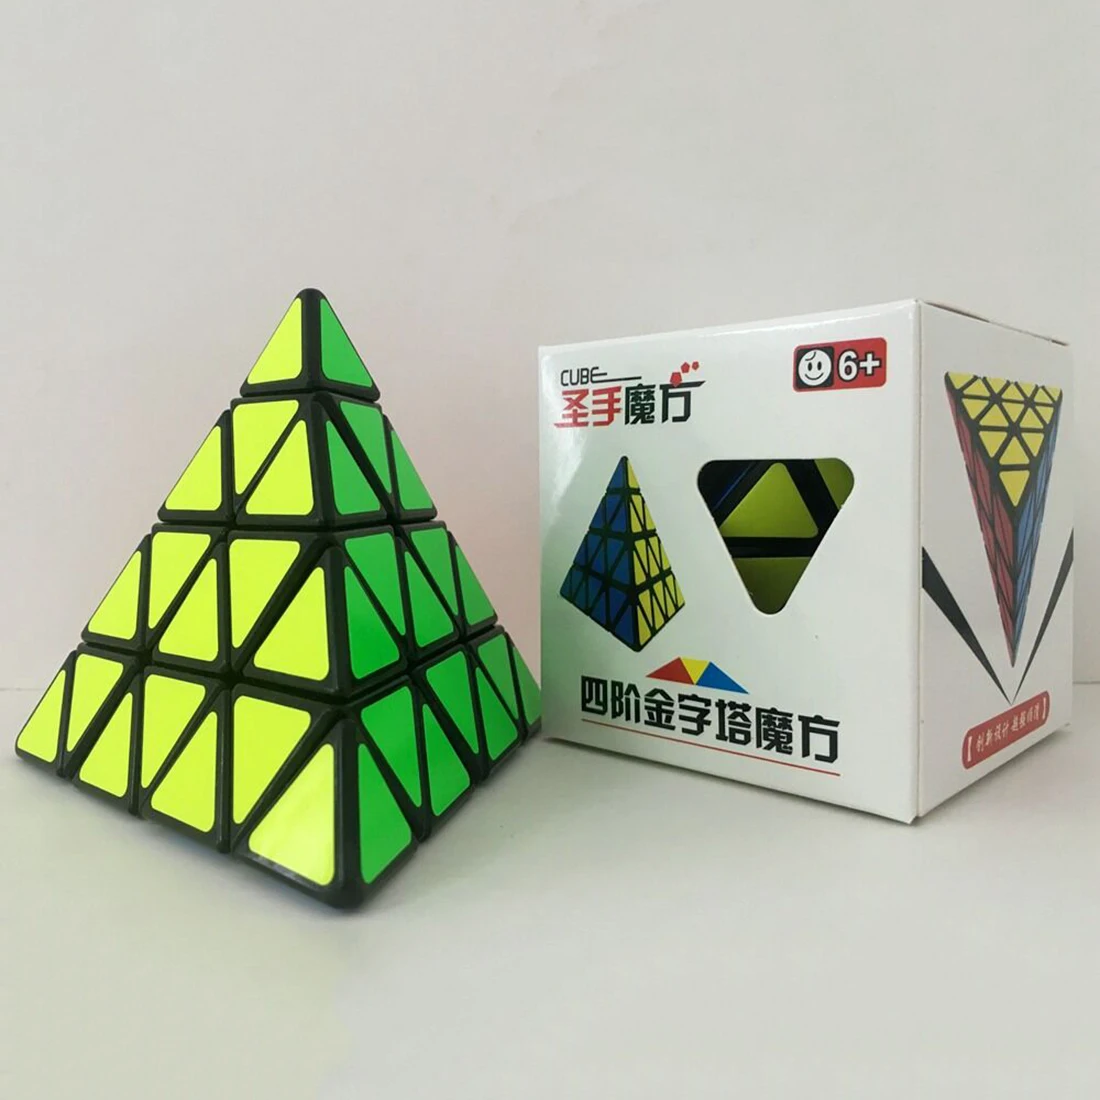 2019 Новое поступление ShengShou Пирамида новый стиль четыре слоя скоростной куб черный 11 см большая пирамида волшебный куб